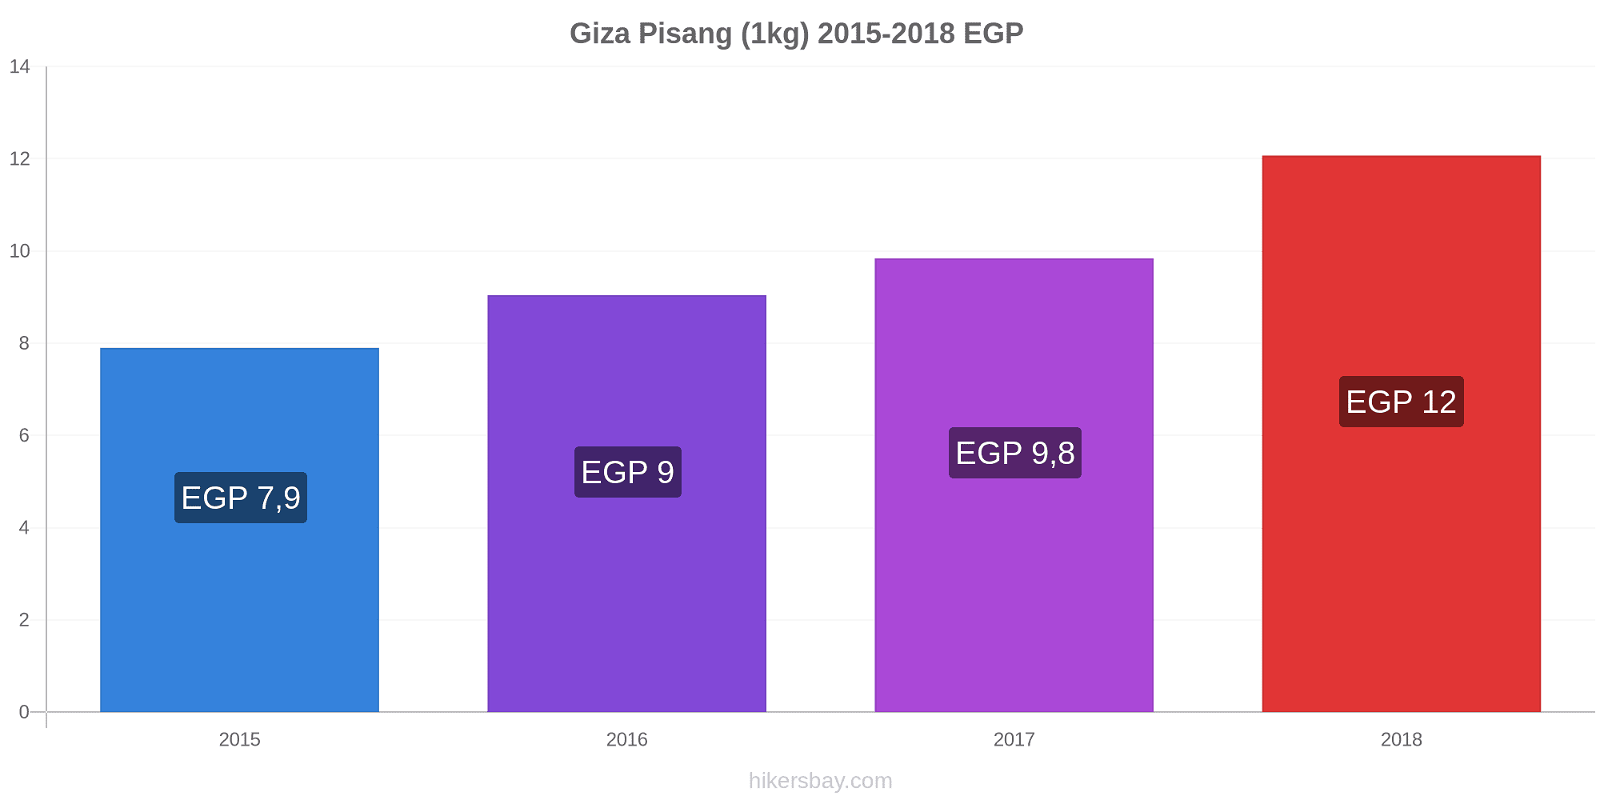 Giza perubahan harga Pisang (1kg) hikersbay.com